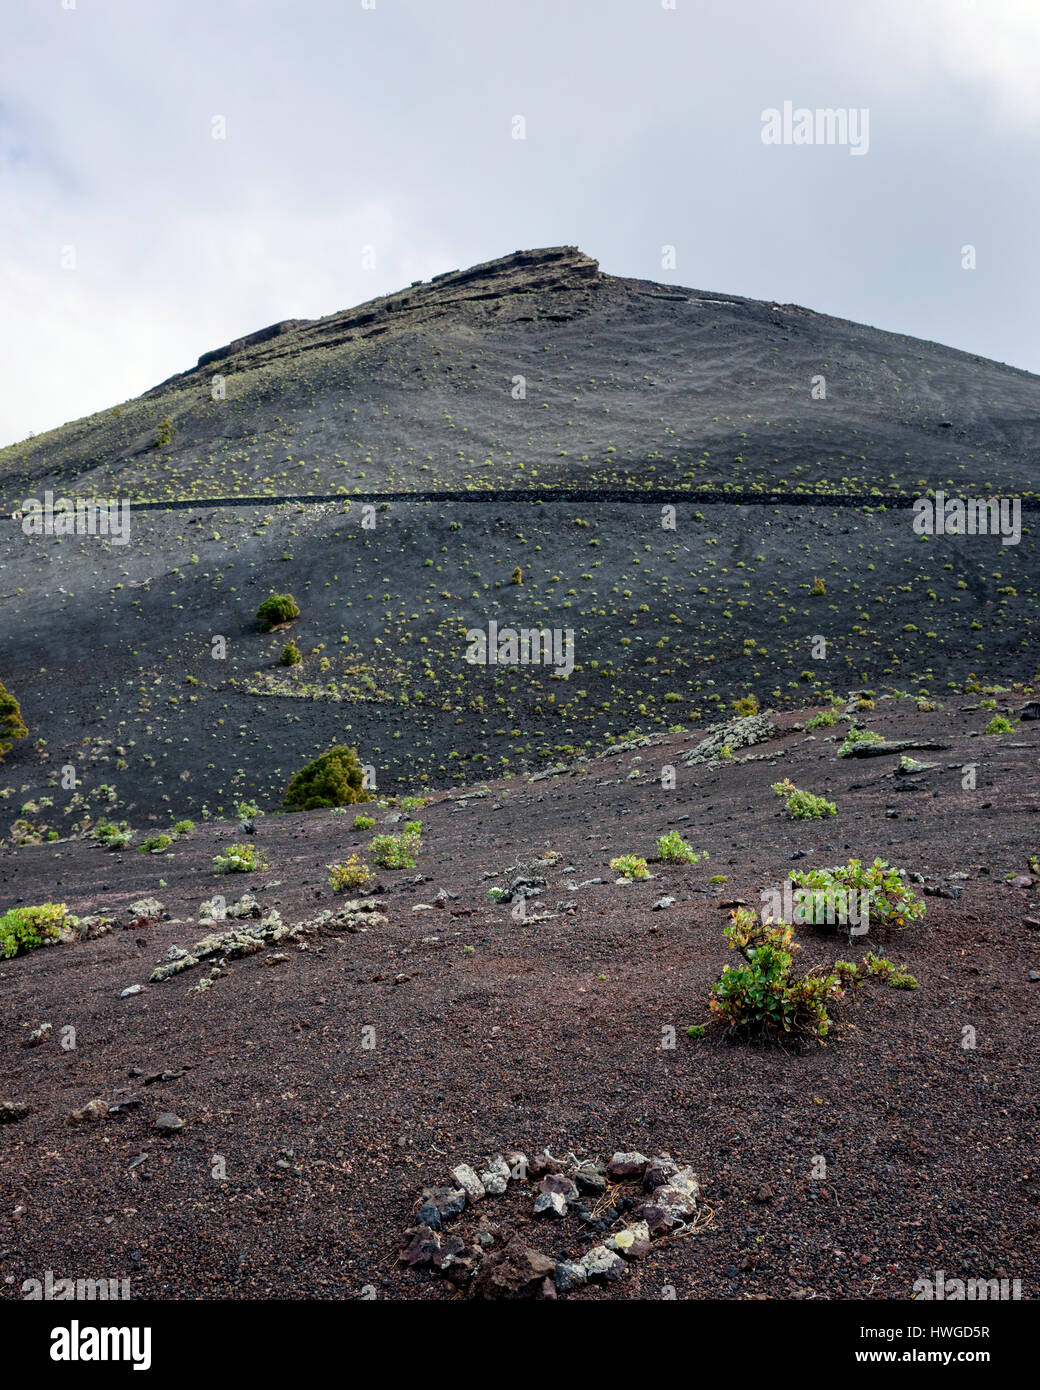 Volcan de San Antonio, Fuencaliente. La Palma. Una vista verso San Antonio vulcano. Il vulcano ha eruttato l'ultima nel 1677, che ha causato l'geologico formazione di terra e di roccia lavica paesaggio in cui la scarsa vegetazione è in grado di crescere. Nuvole indugiare oltre la cima del vulcano. Foto Stock